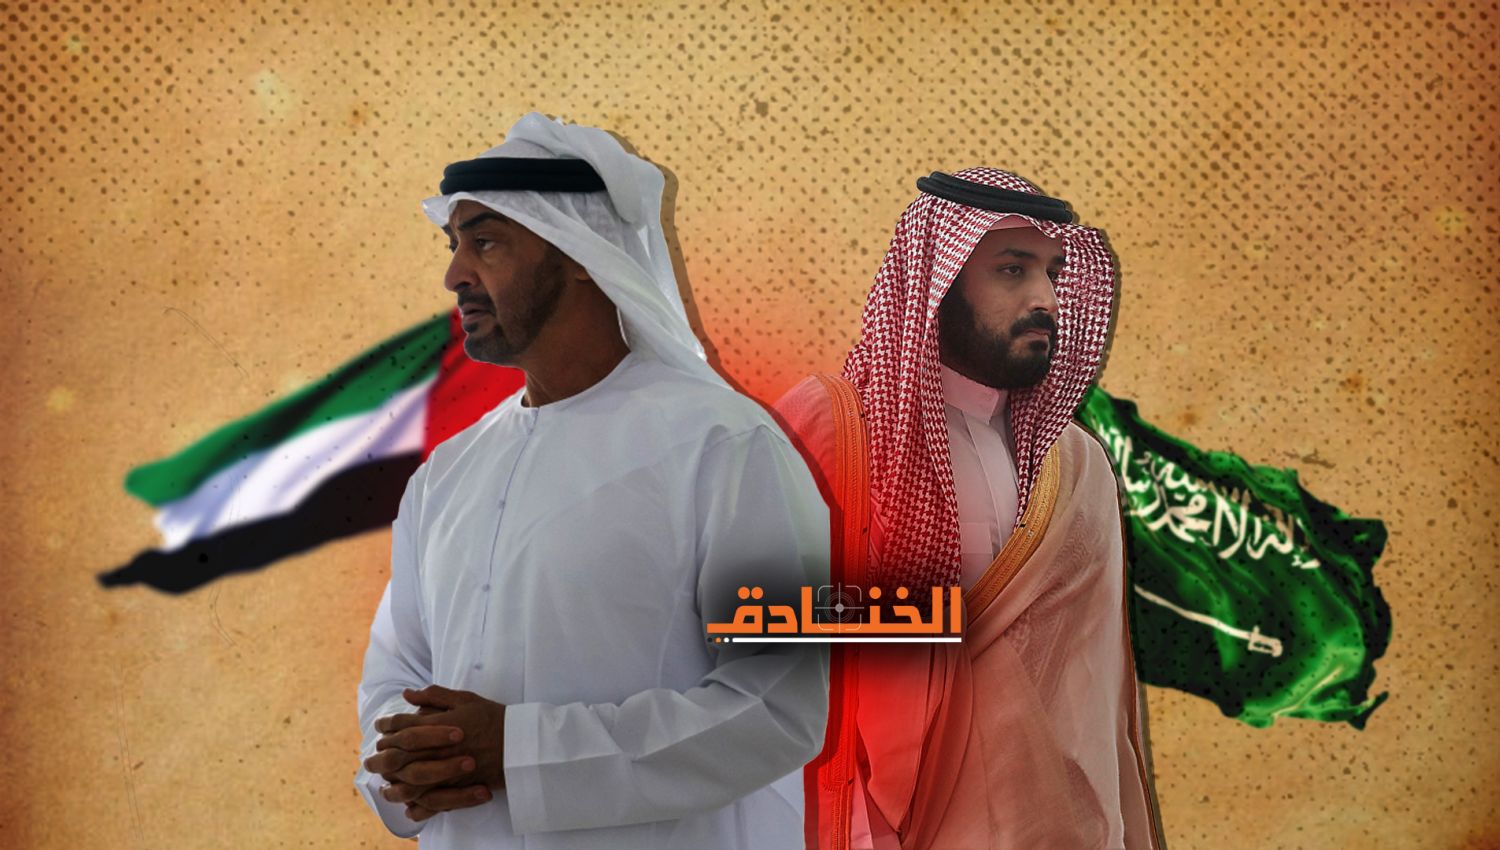 لوموند: وقت تعاون الرياض وأبو ظبي المربح قد انتهى بالفعل